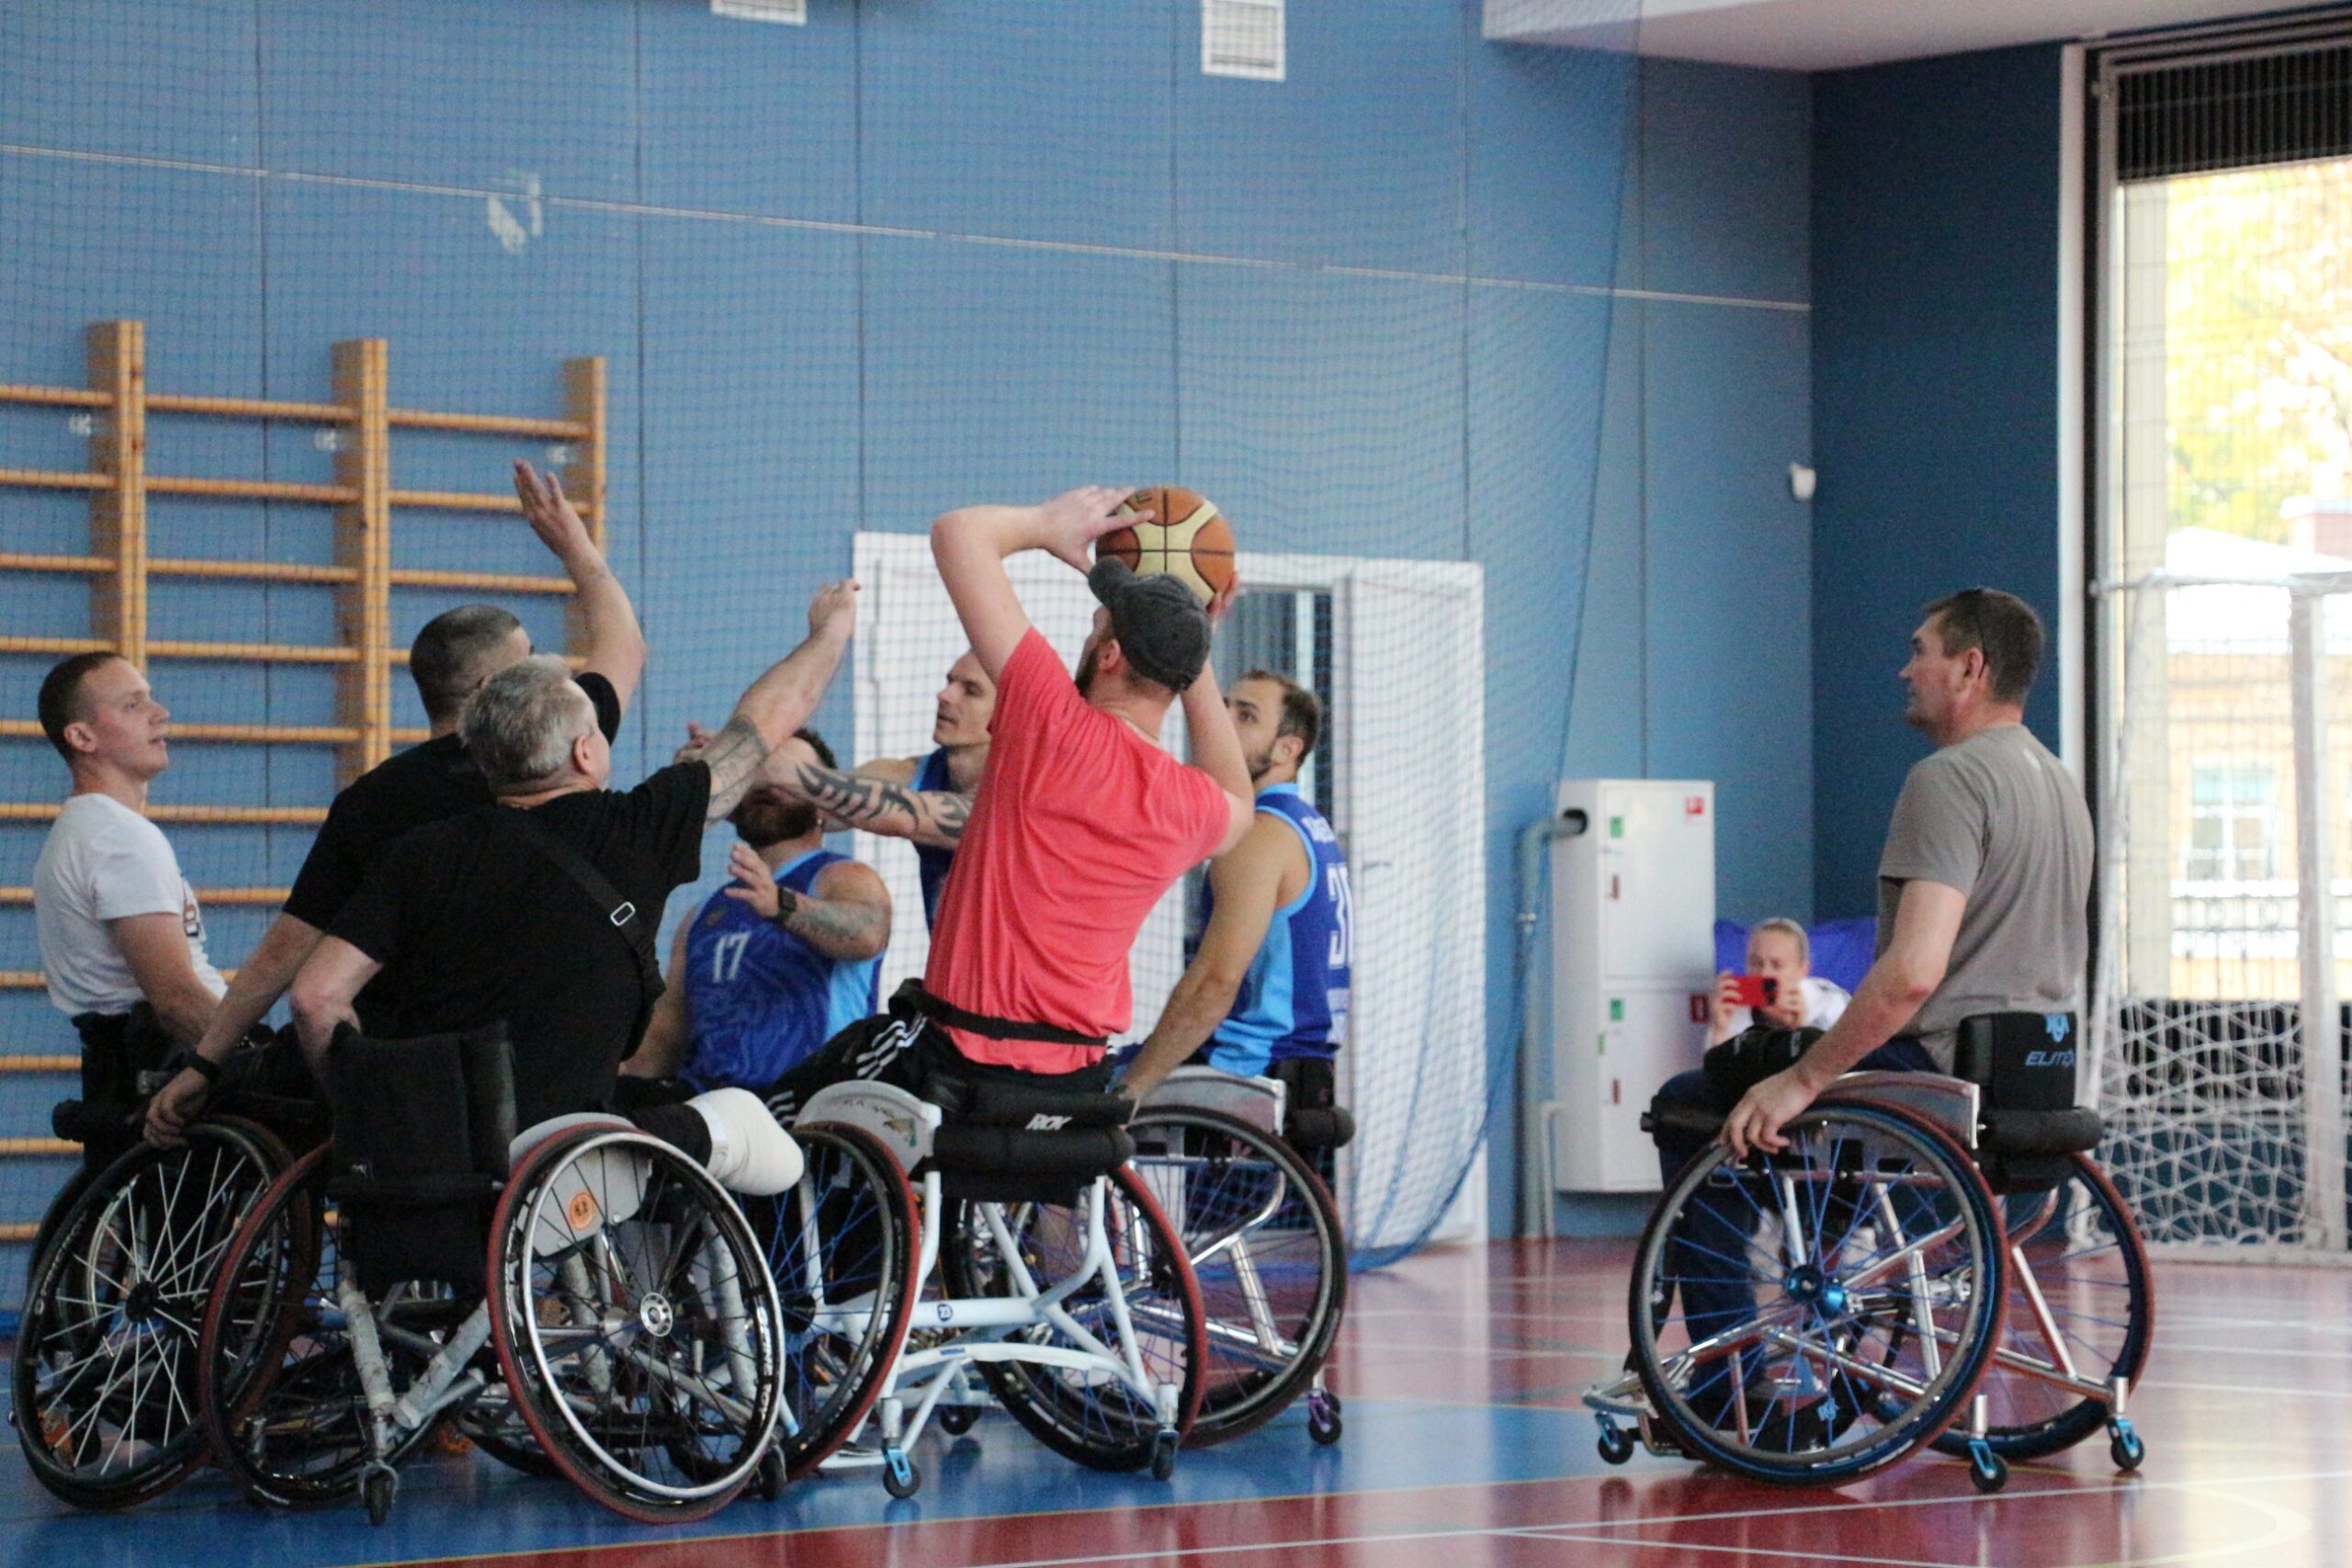 Команда «БасКИ» провела мастер-класс по баскетболу на колясках для раненых, проходящих реабилитацию в Военно-медицинской академии